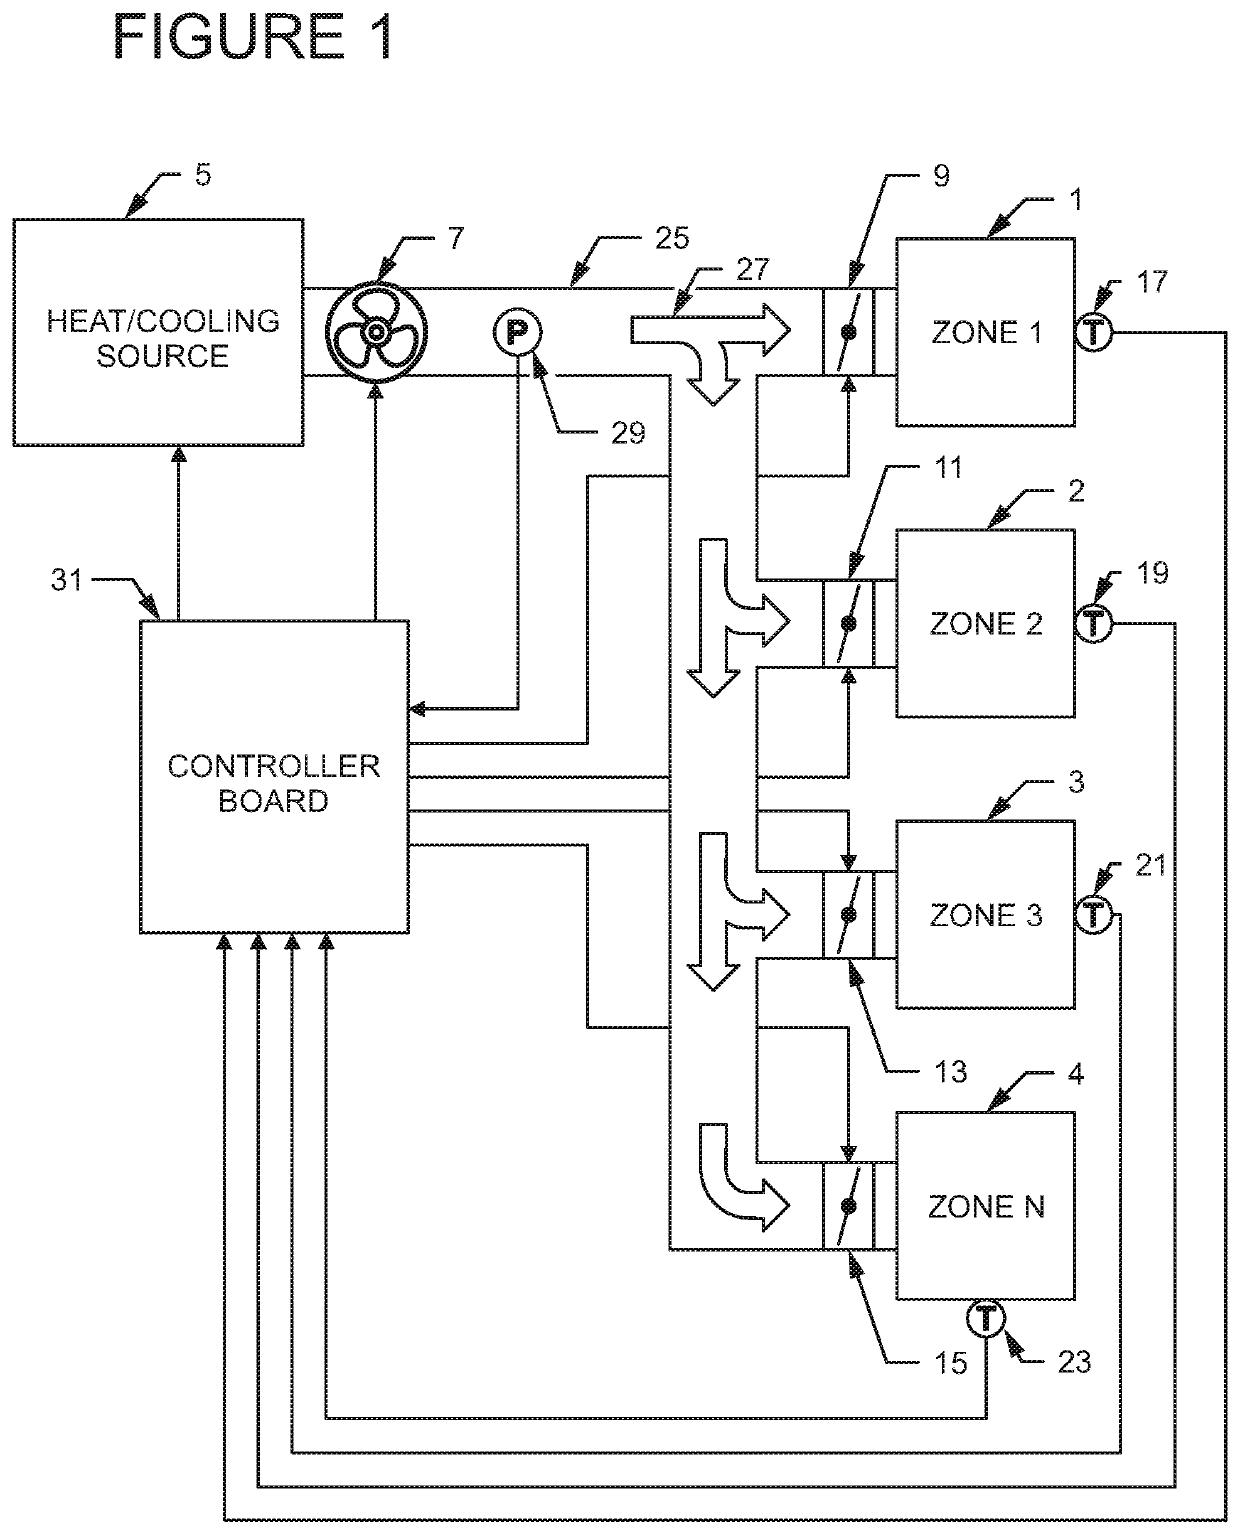 Efficient multi-zone multi-velocity HVAC control method and apparatus